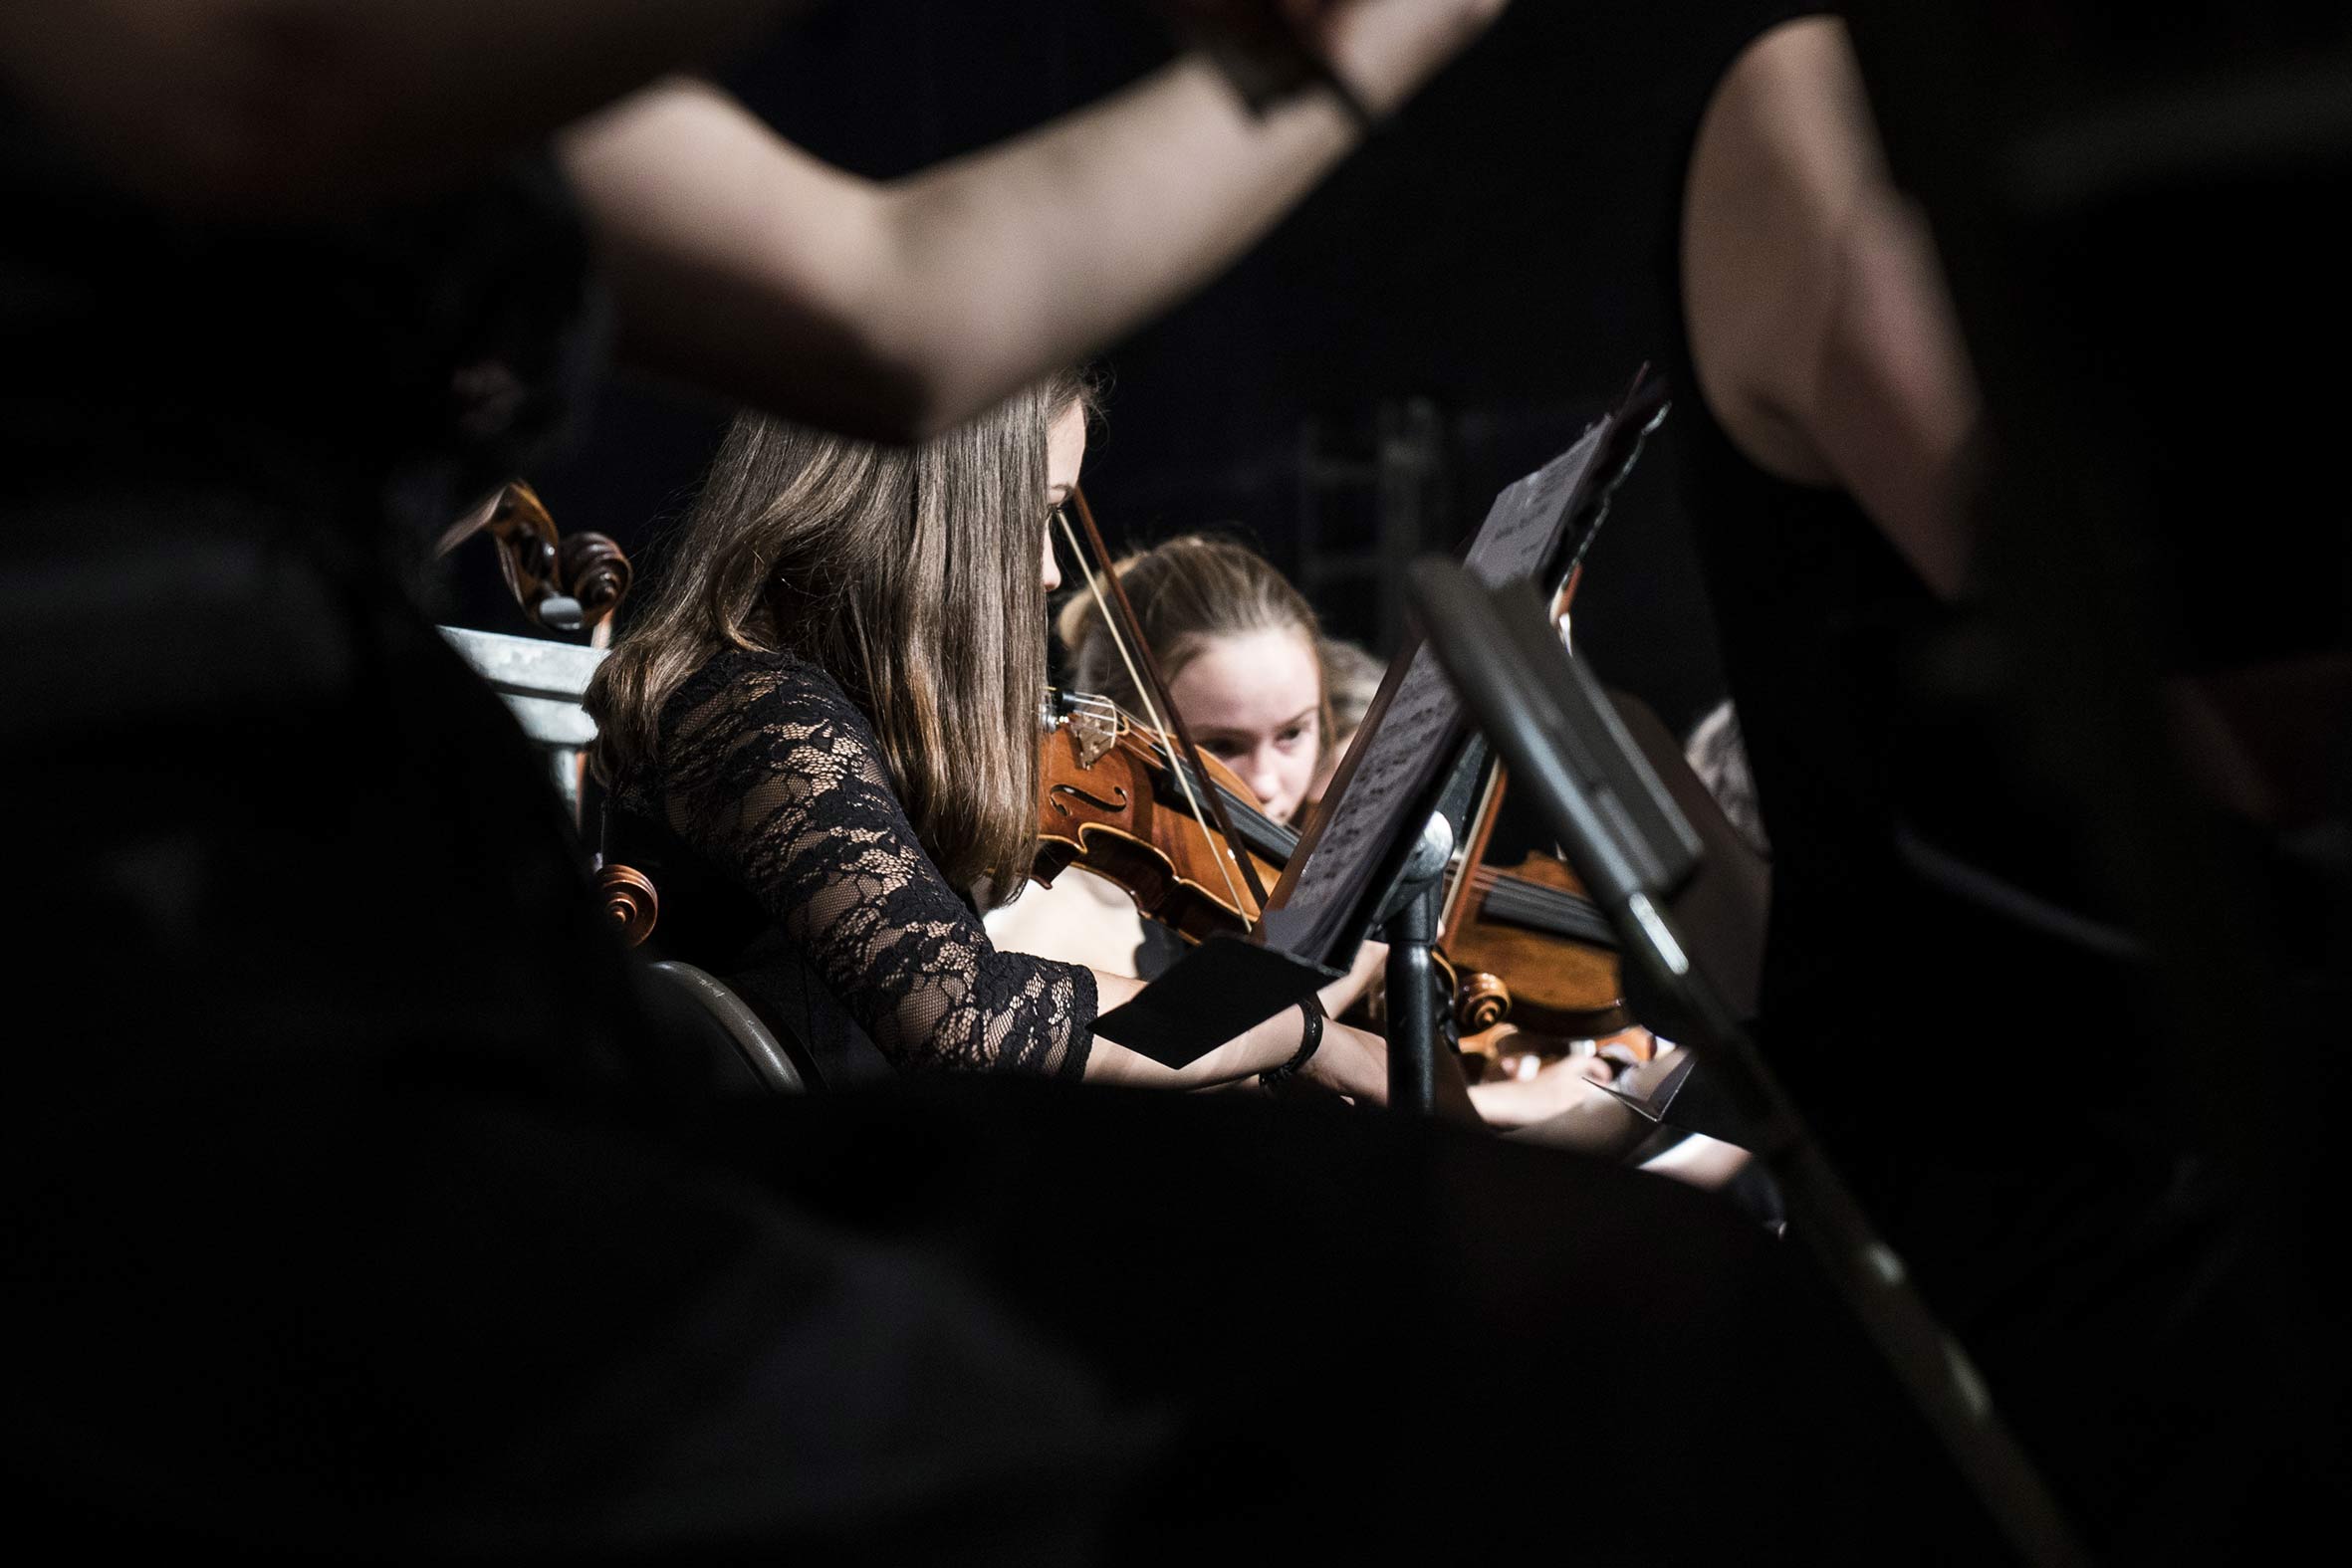 Konzertfotografie von zwei jungen Mädchen, die Geige spielen im Konzert